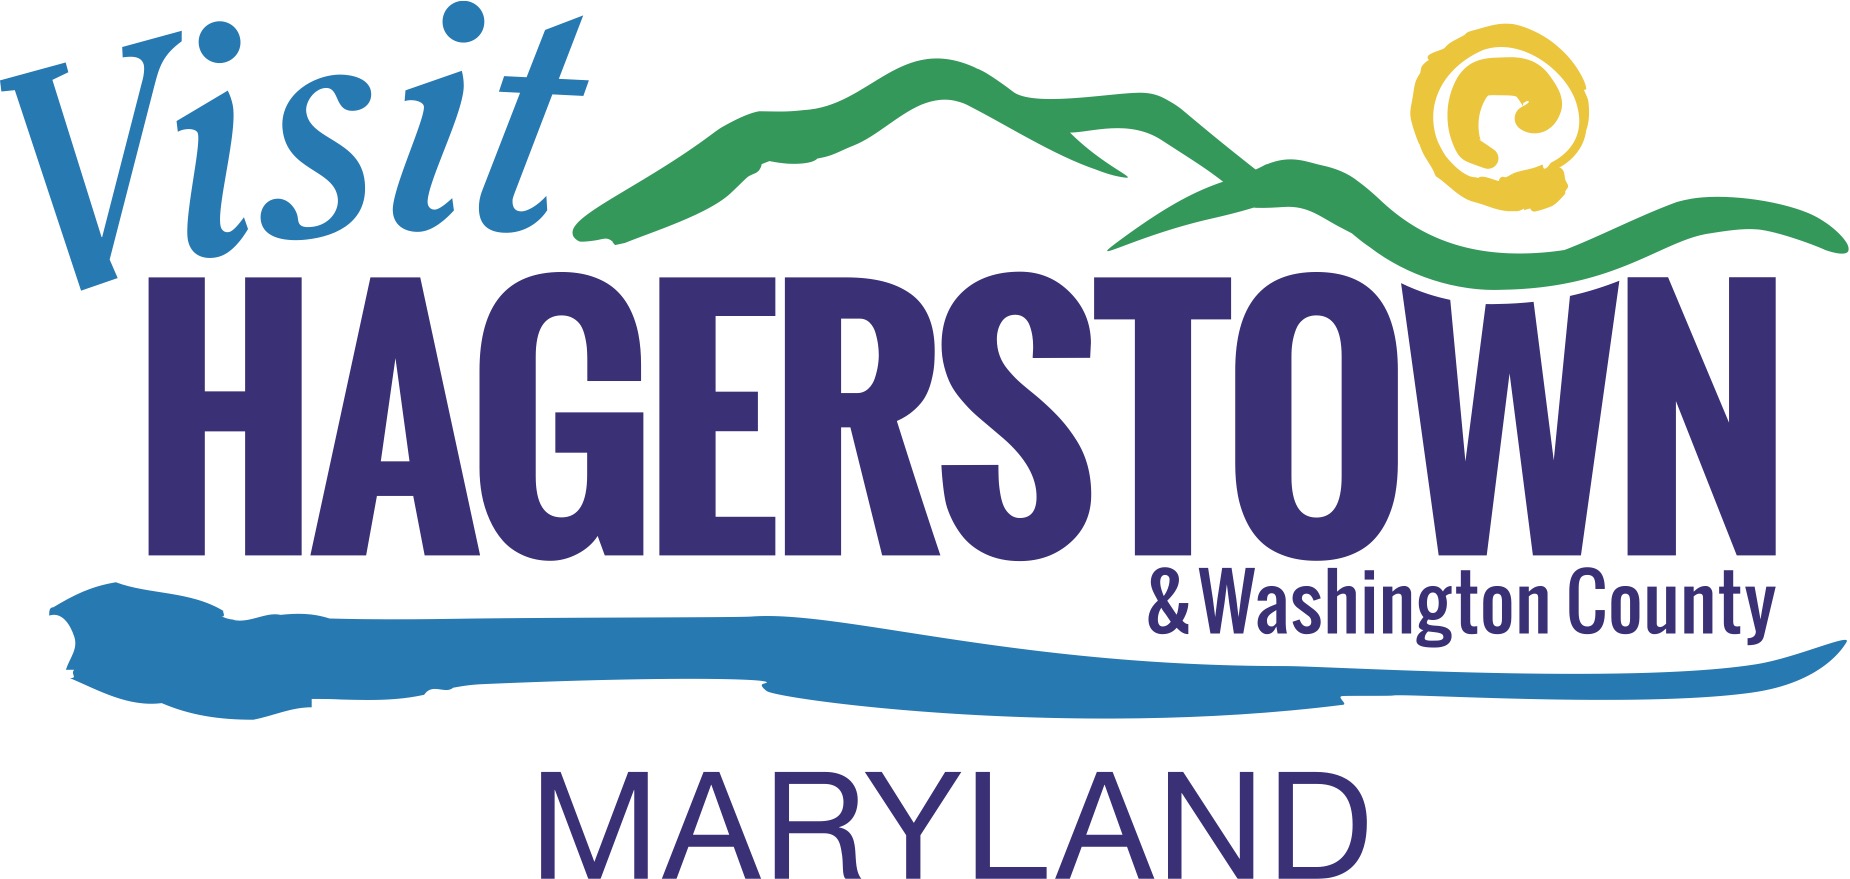 Maryland Tourism Logo